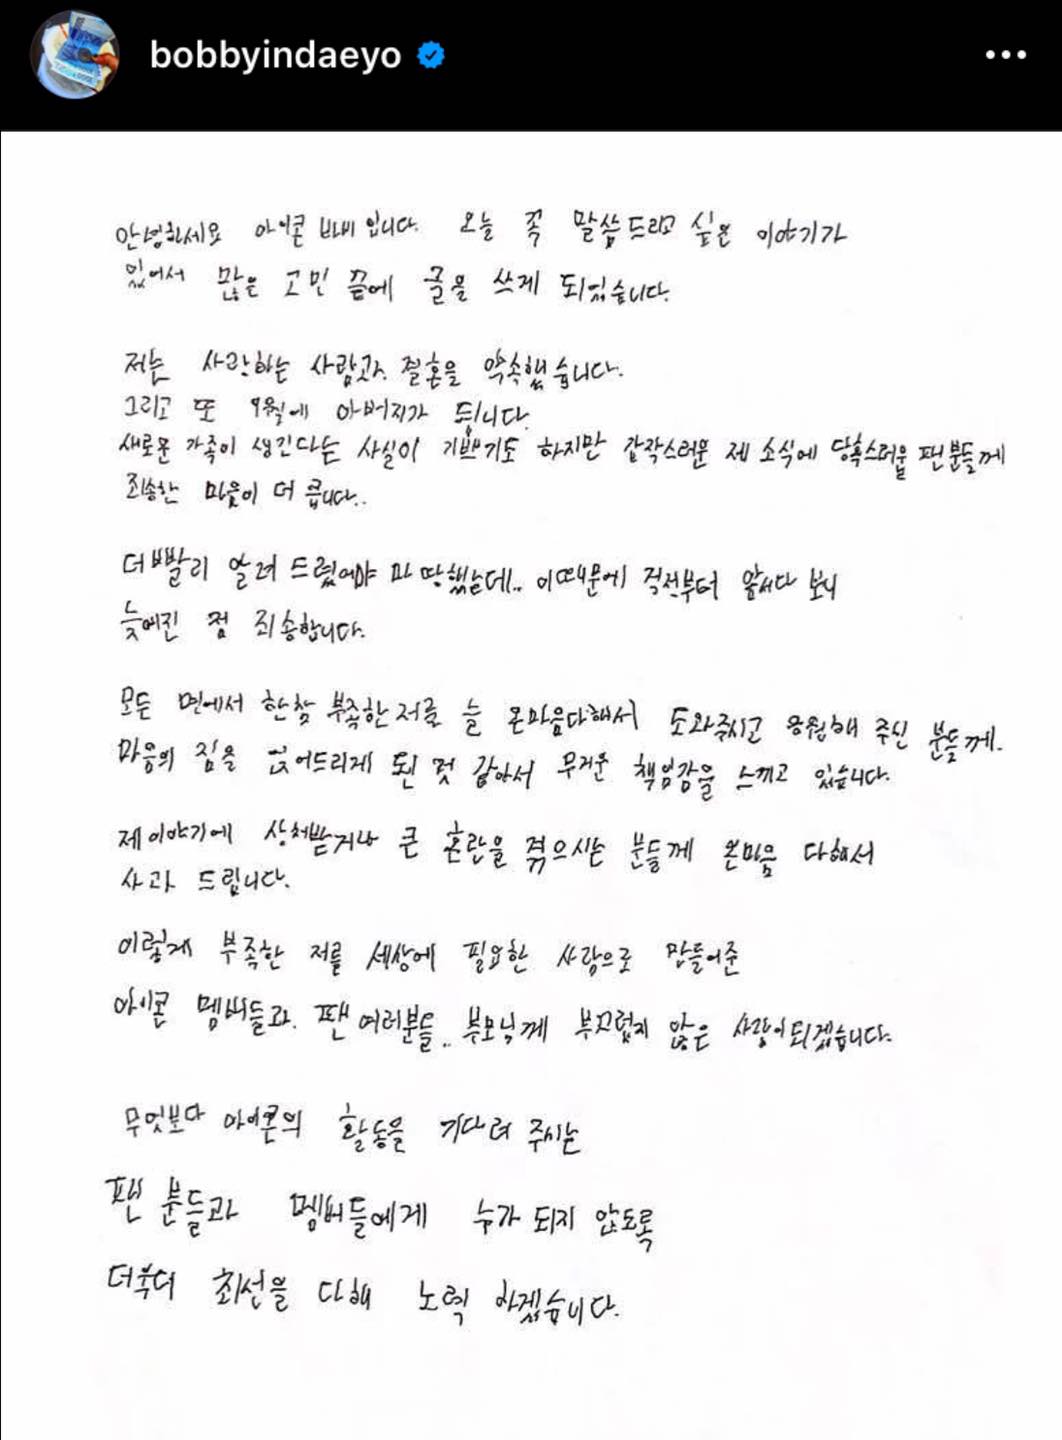 Tâm thư thông báo chuyện kết hôn và có con của Bobby (iKON)